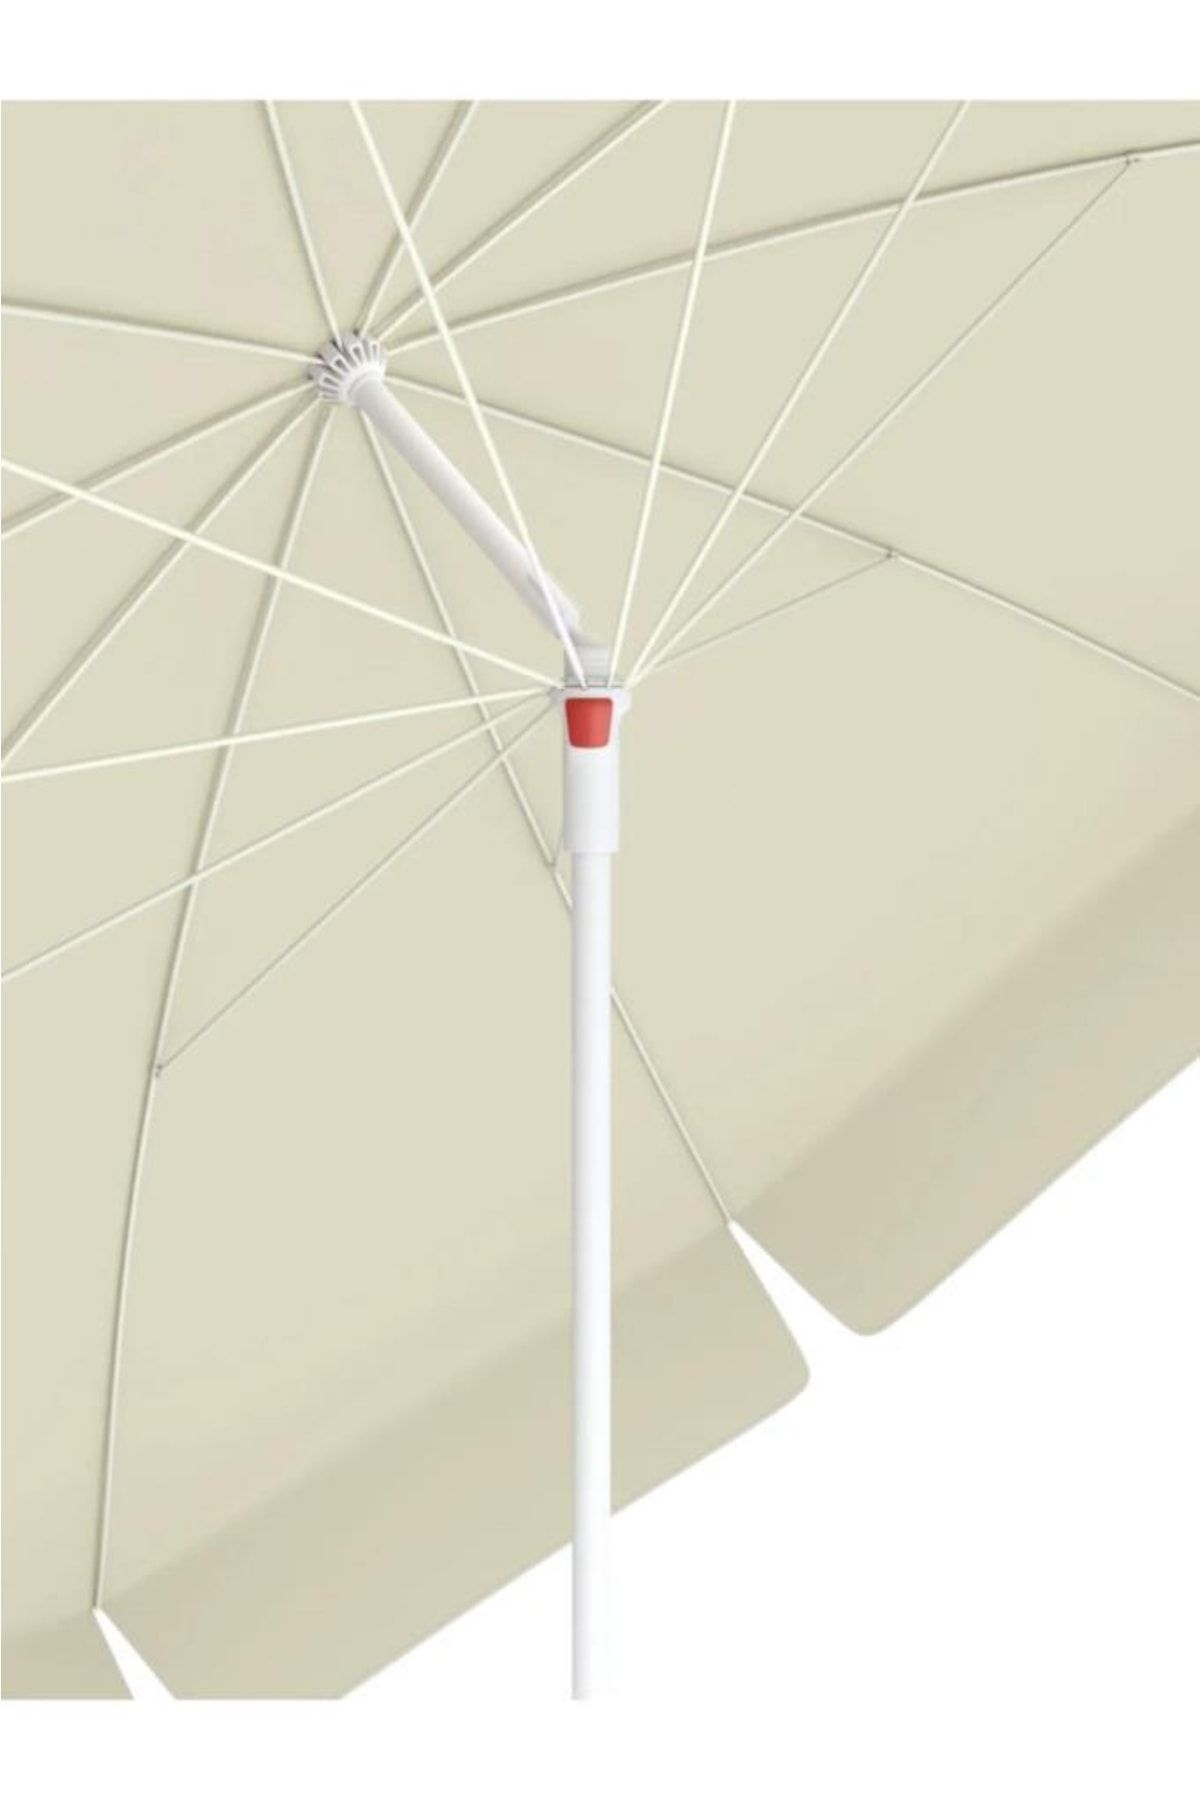 SUME 10 Telli Plaj Balkon Bahçe Şemsiyesi Eğilebilir 200 Cm Çap Kalın Kumaş